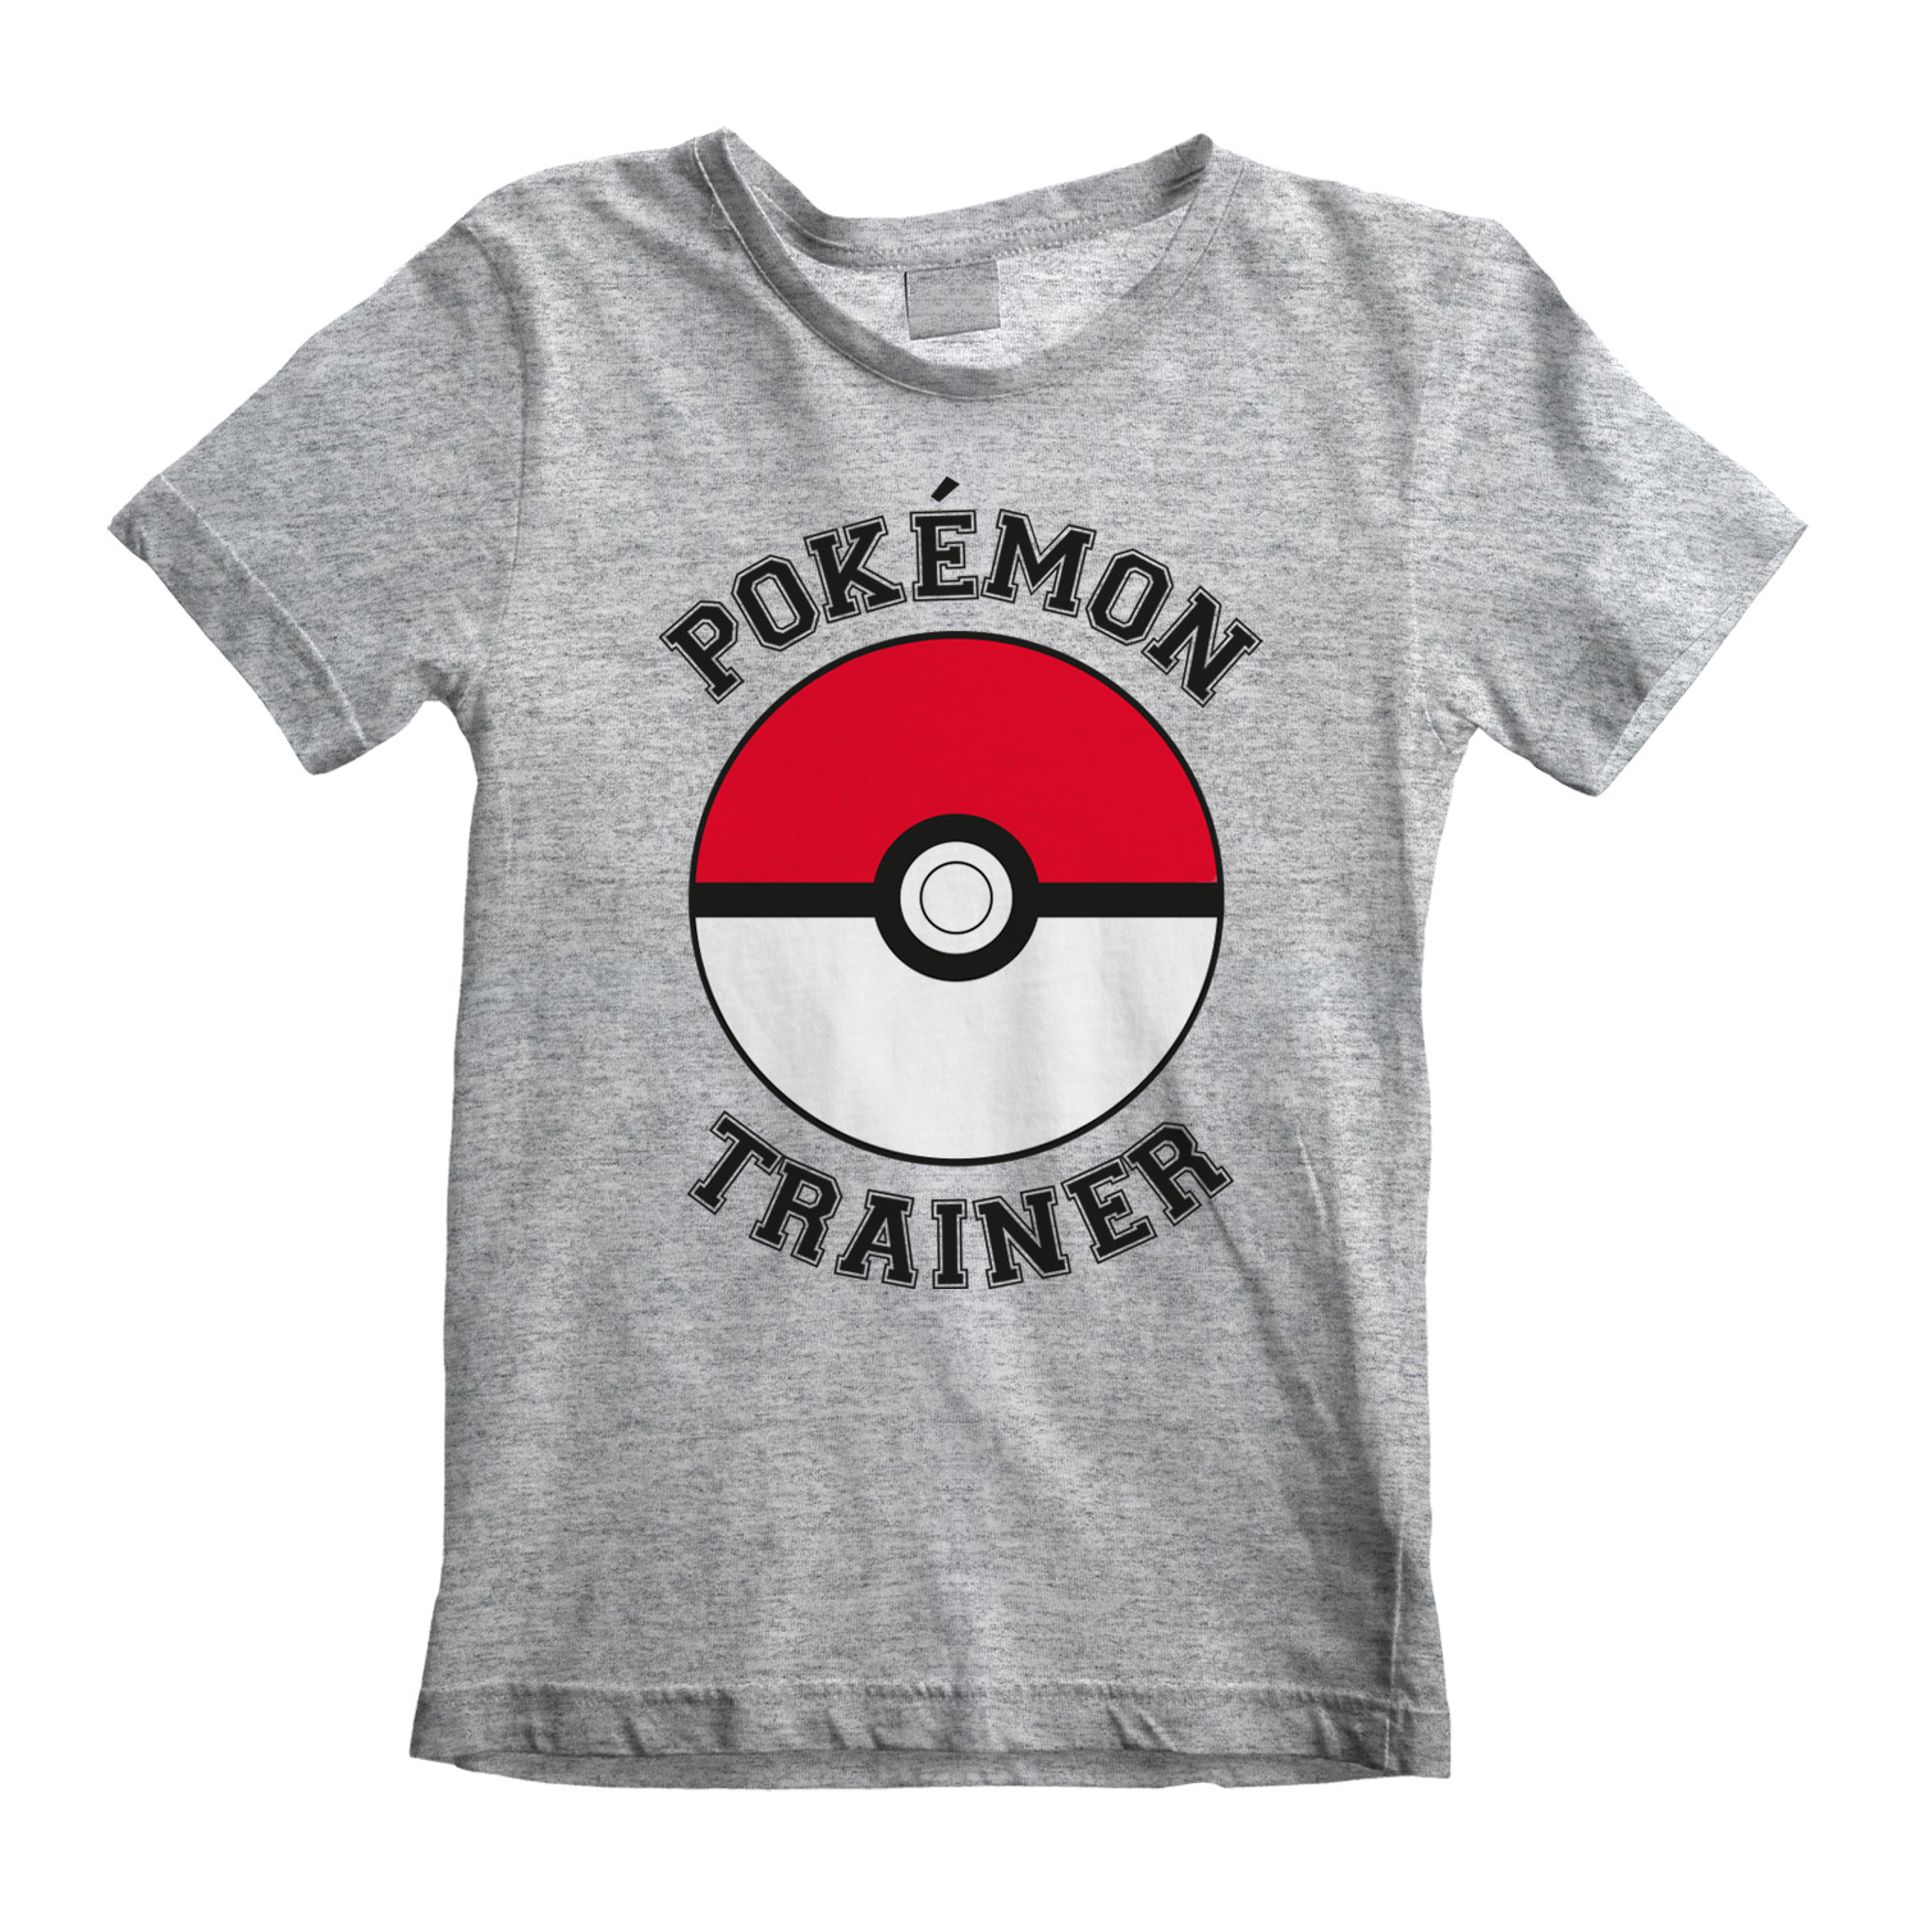 Nintendo - T-shirt Enfant Gris chiné Pokémon Entraîneur - 7-8 an